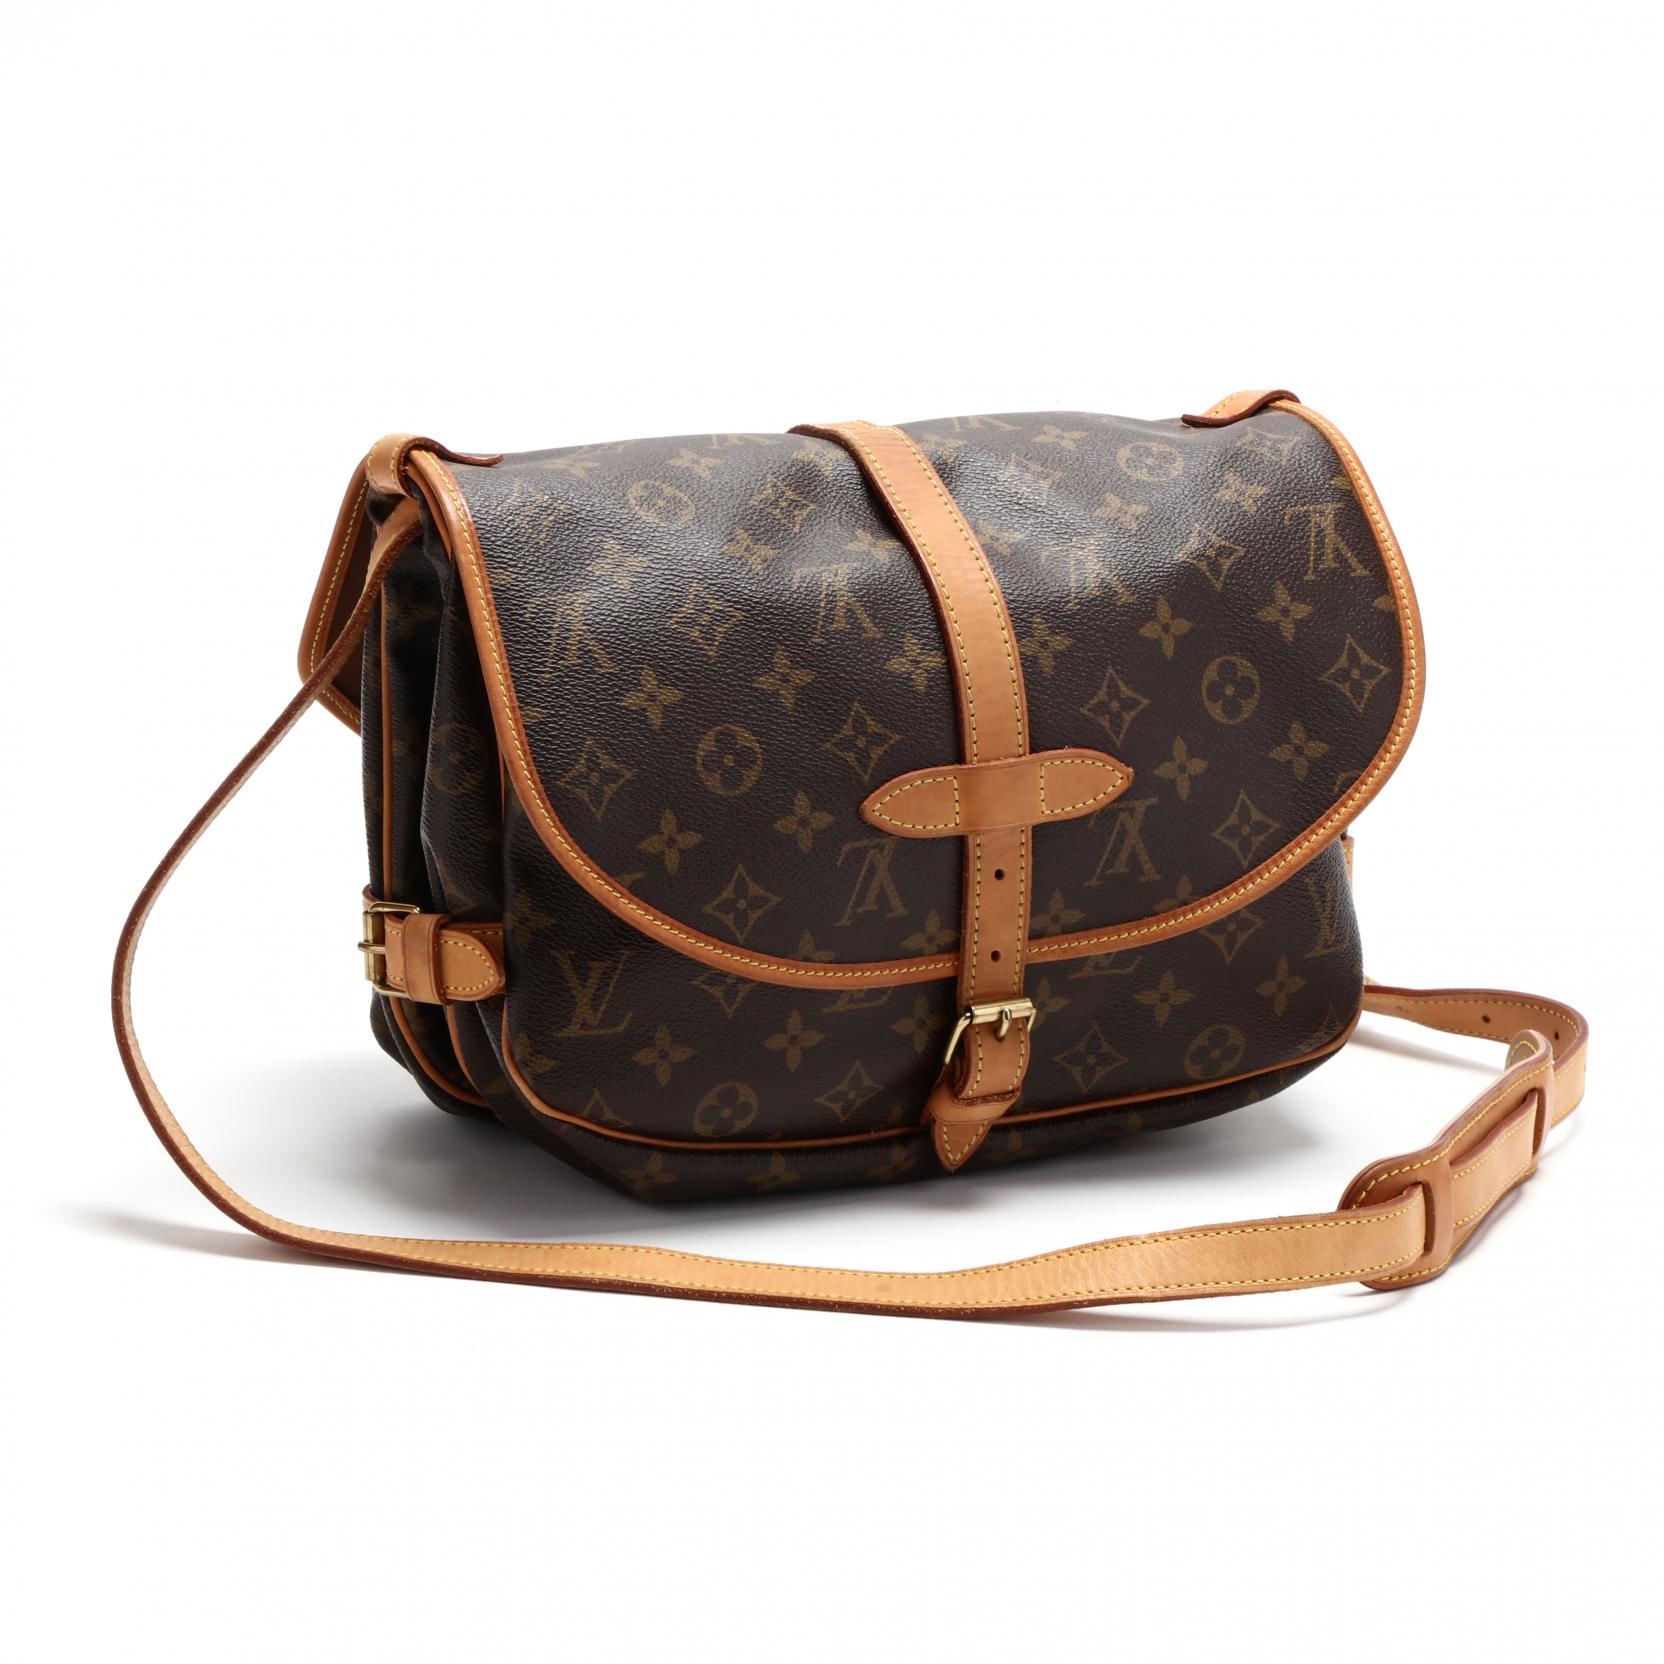 Sold at Auction: Double Sided Flap Shoulder Bag, Saumur 25, Louis Vuitton